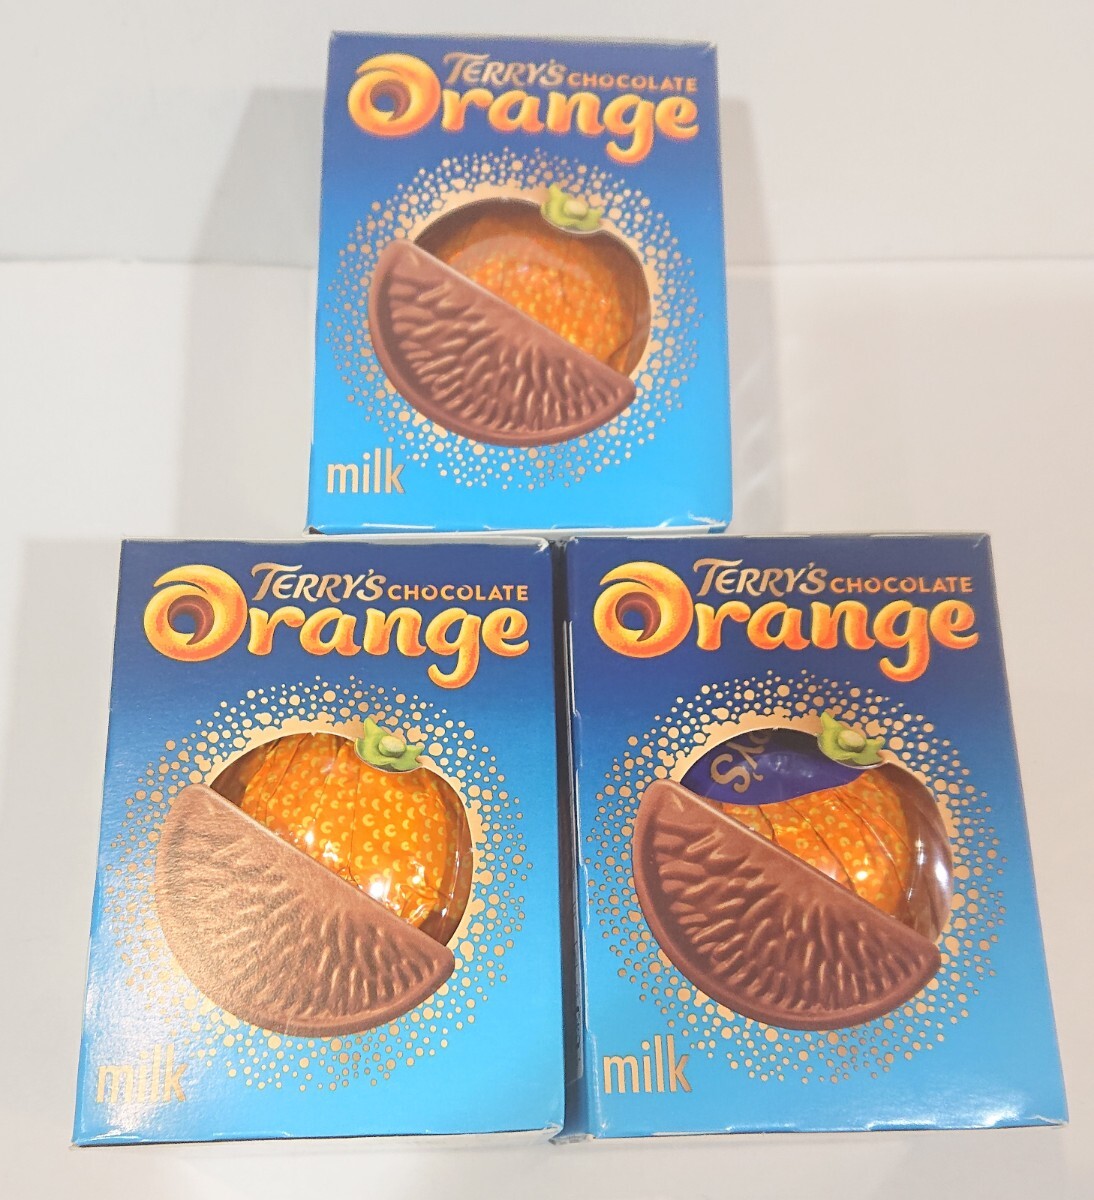  Terry z шоколад orange молоко 3 коробка комплект 